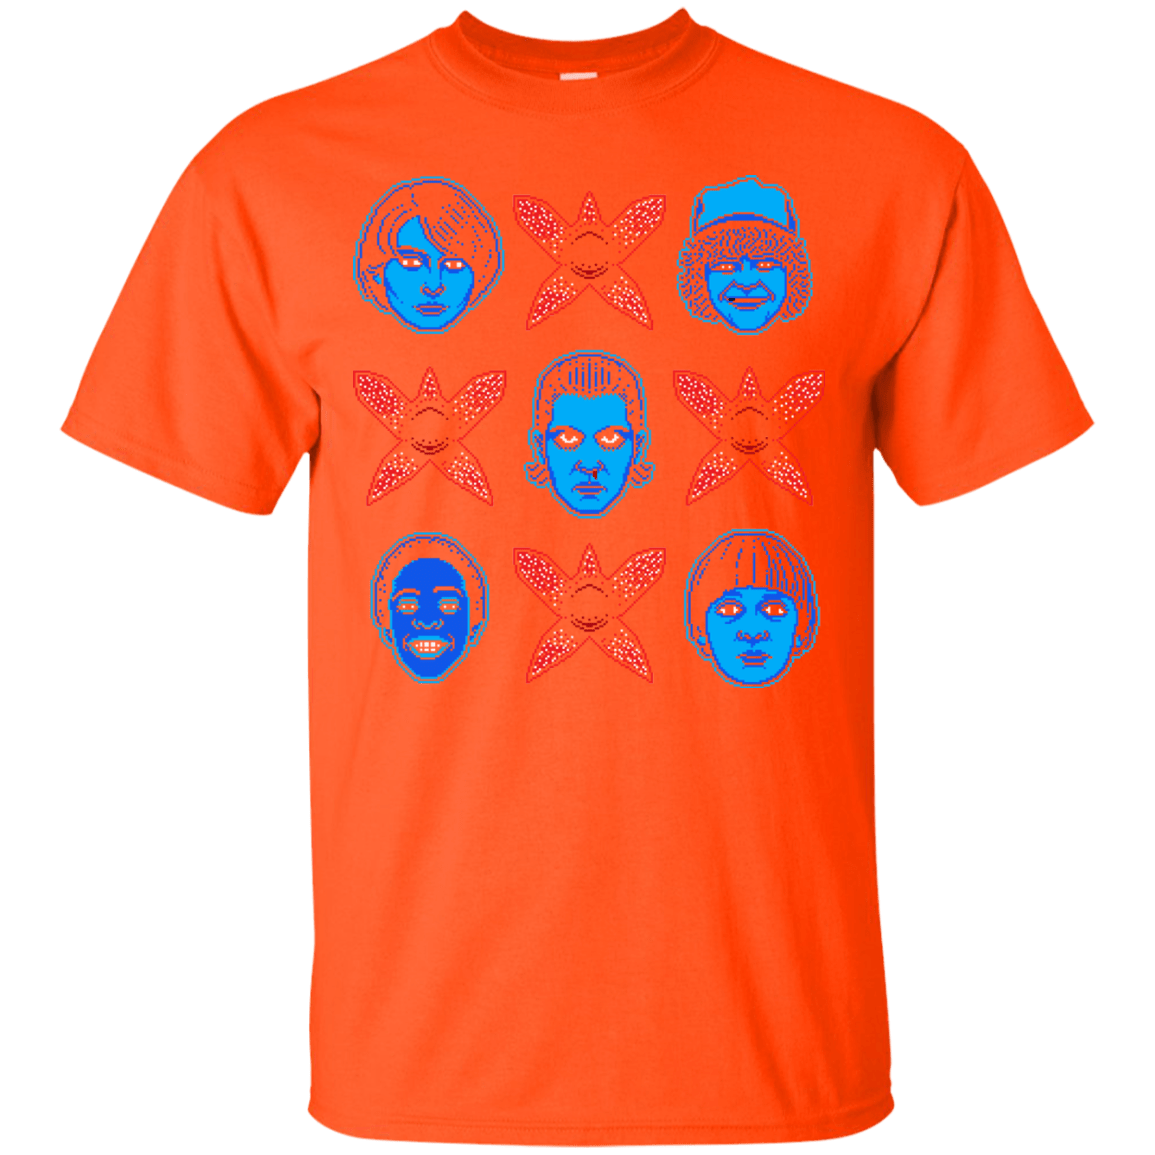 T-Shirts Orange / Small Kids n Killers T-Shirt